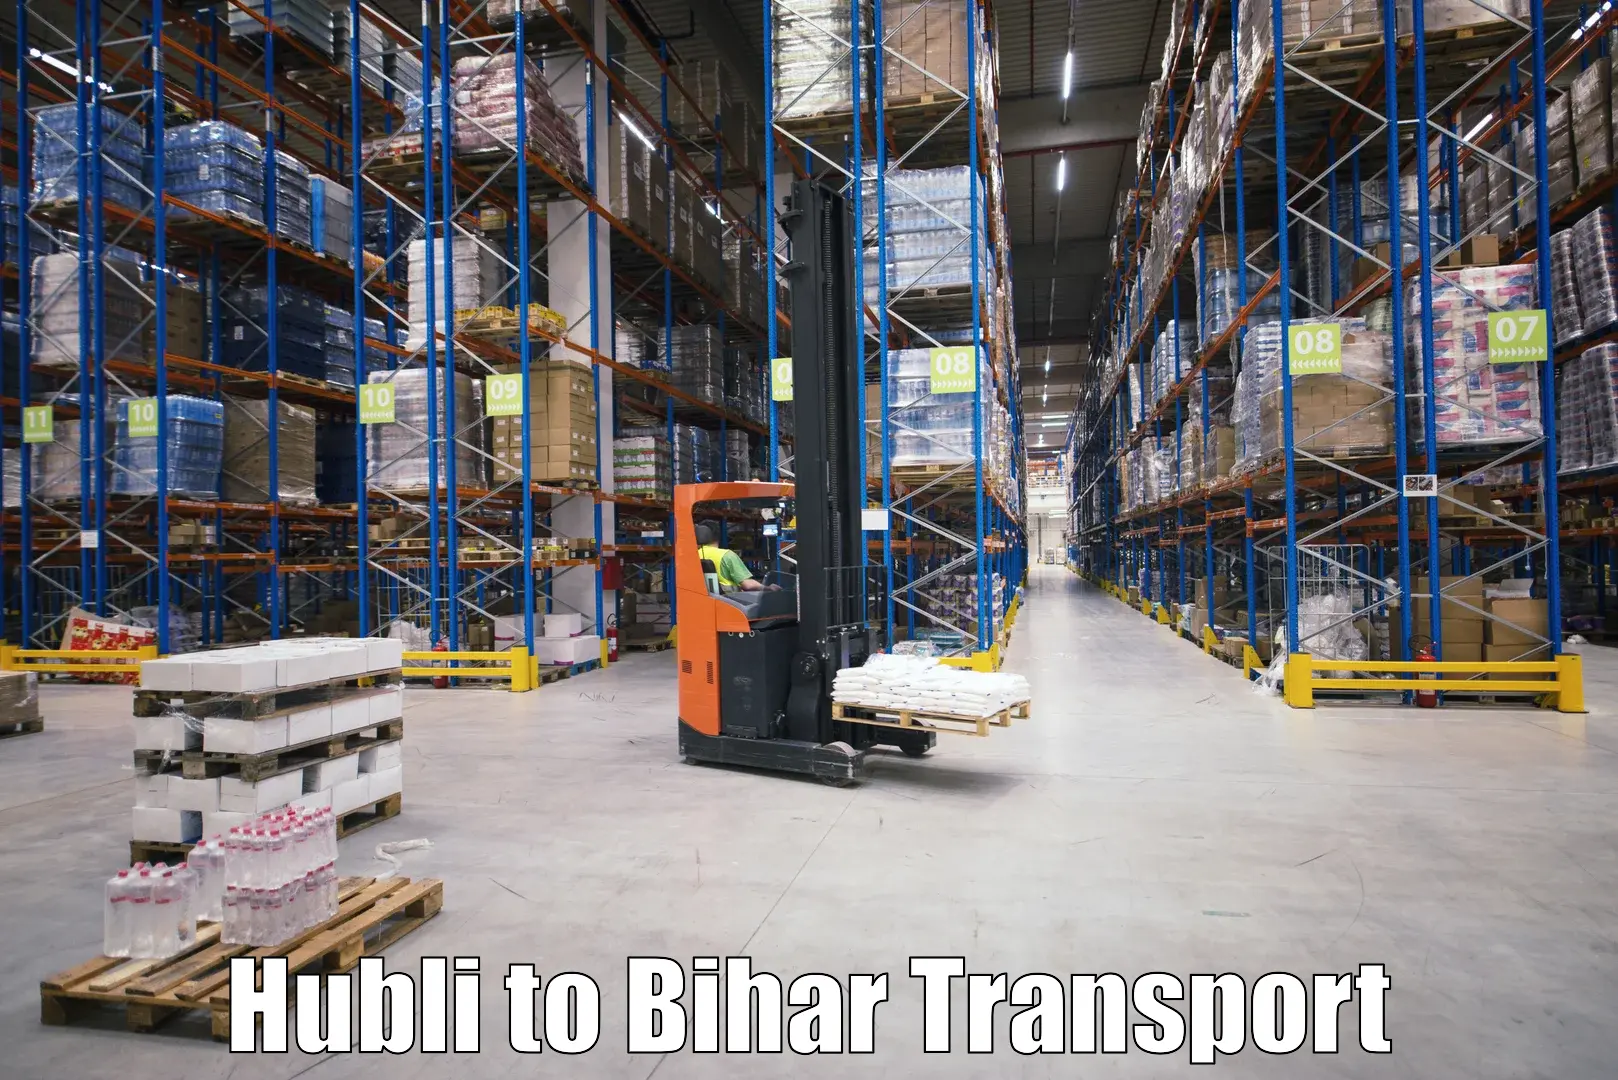 Pick up transport service Hubli to Tekari